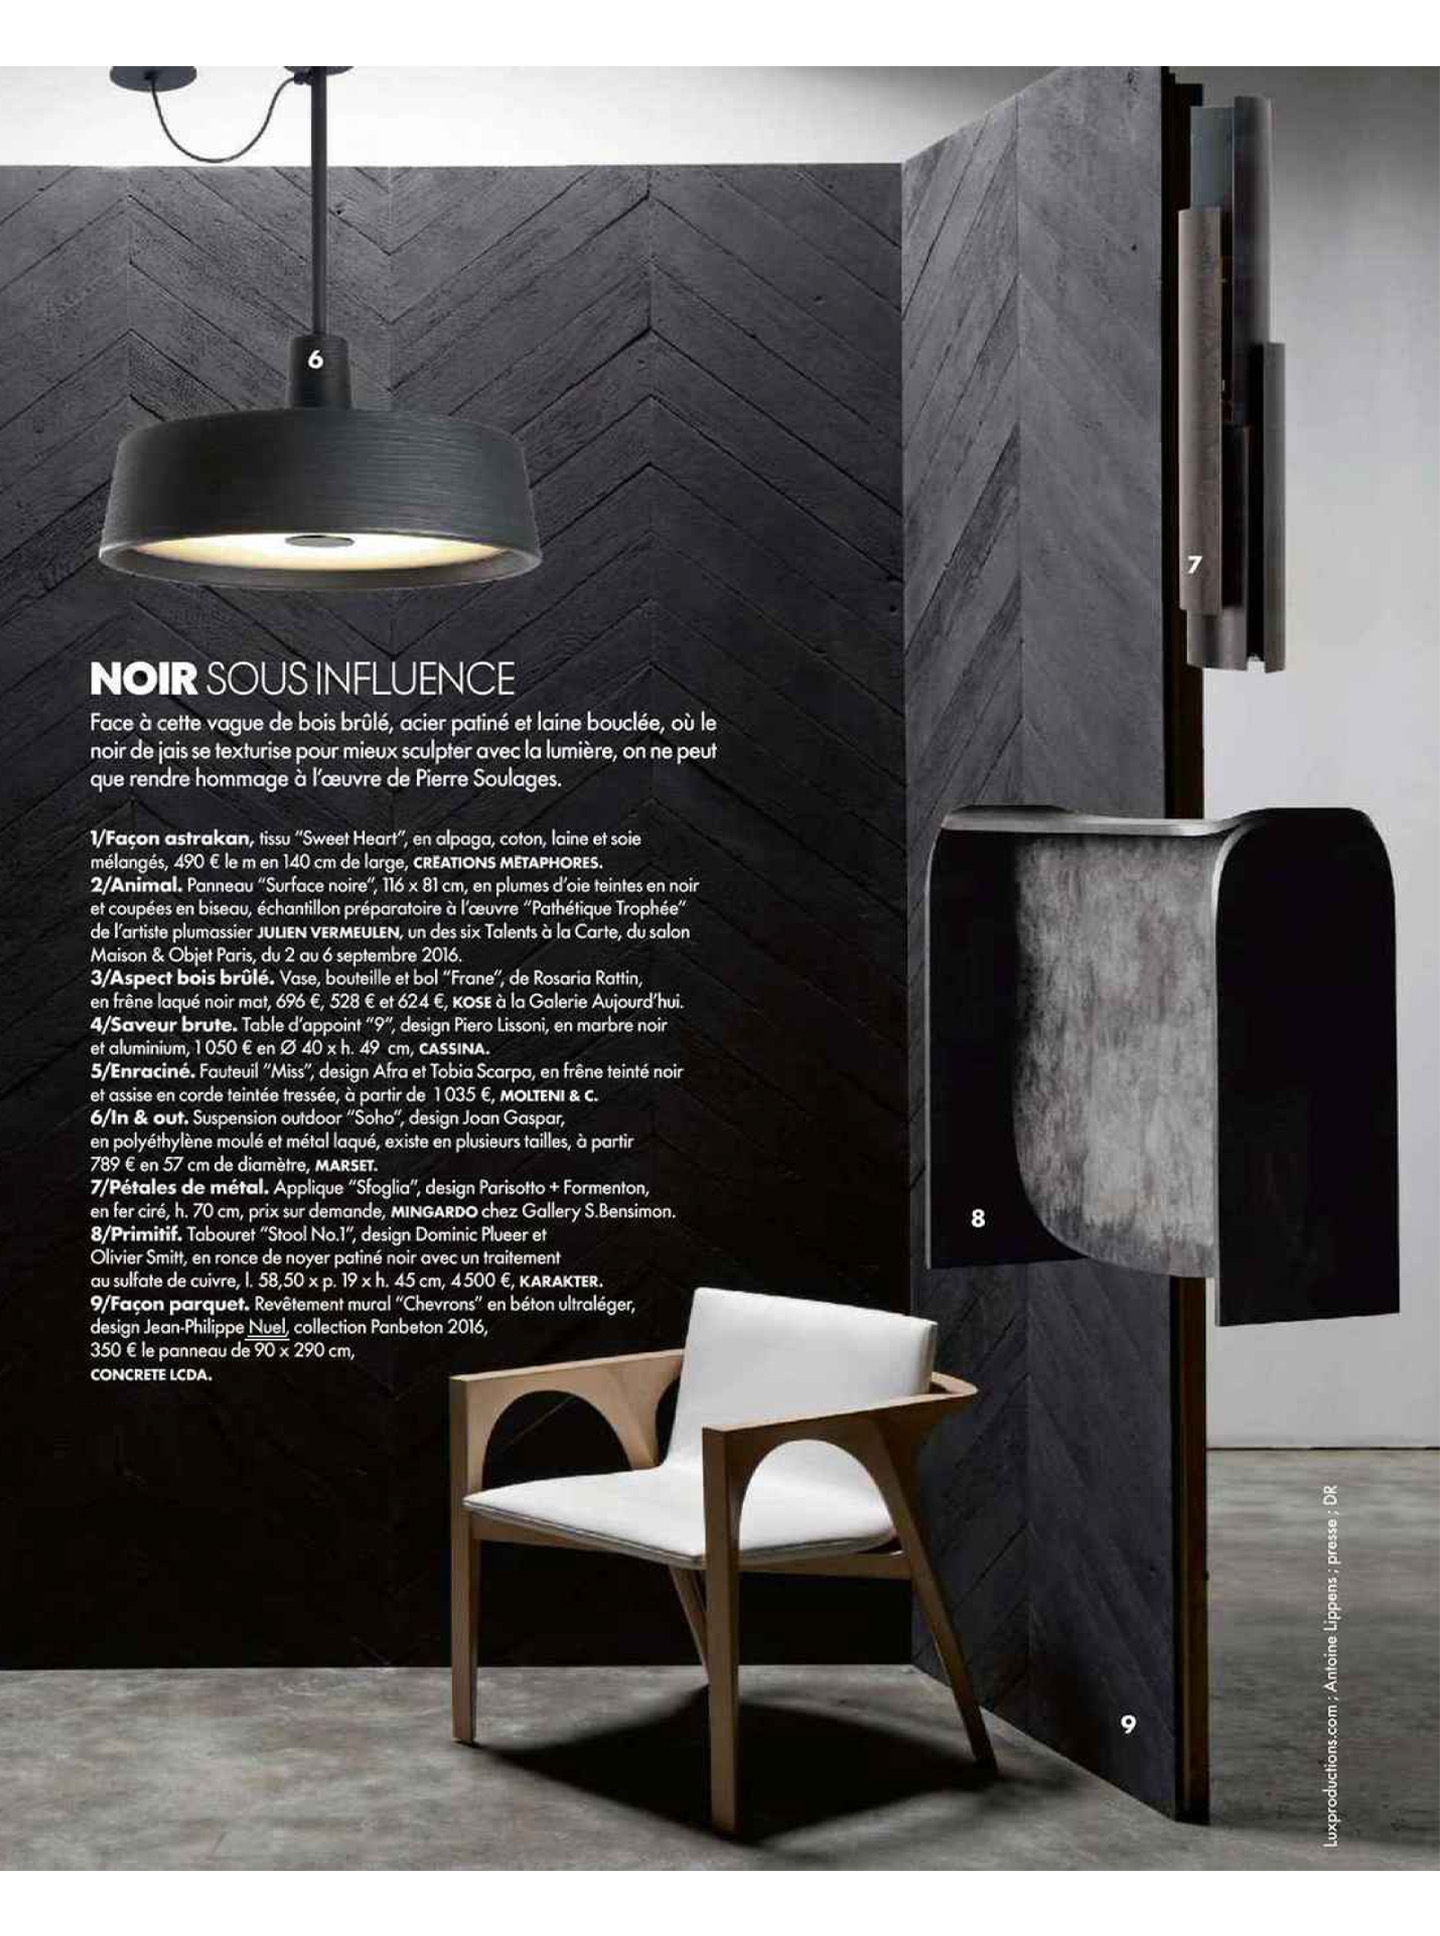 article sur les panneaux décoratifs concrete lcda réalisés par le studio d'architecture d'intérieur jean-philippe nuel et concrete lcda dans le magazine elle décoration